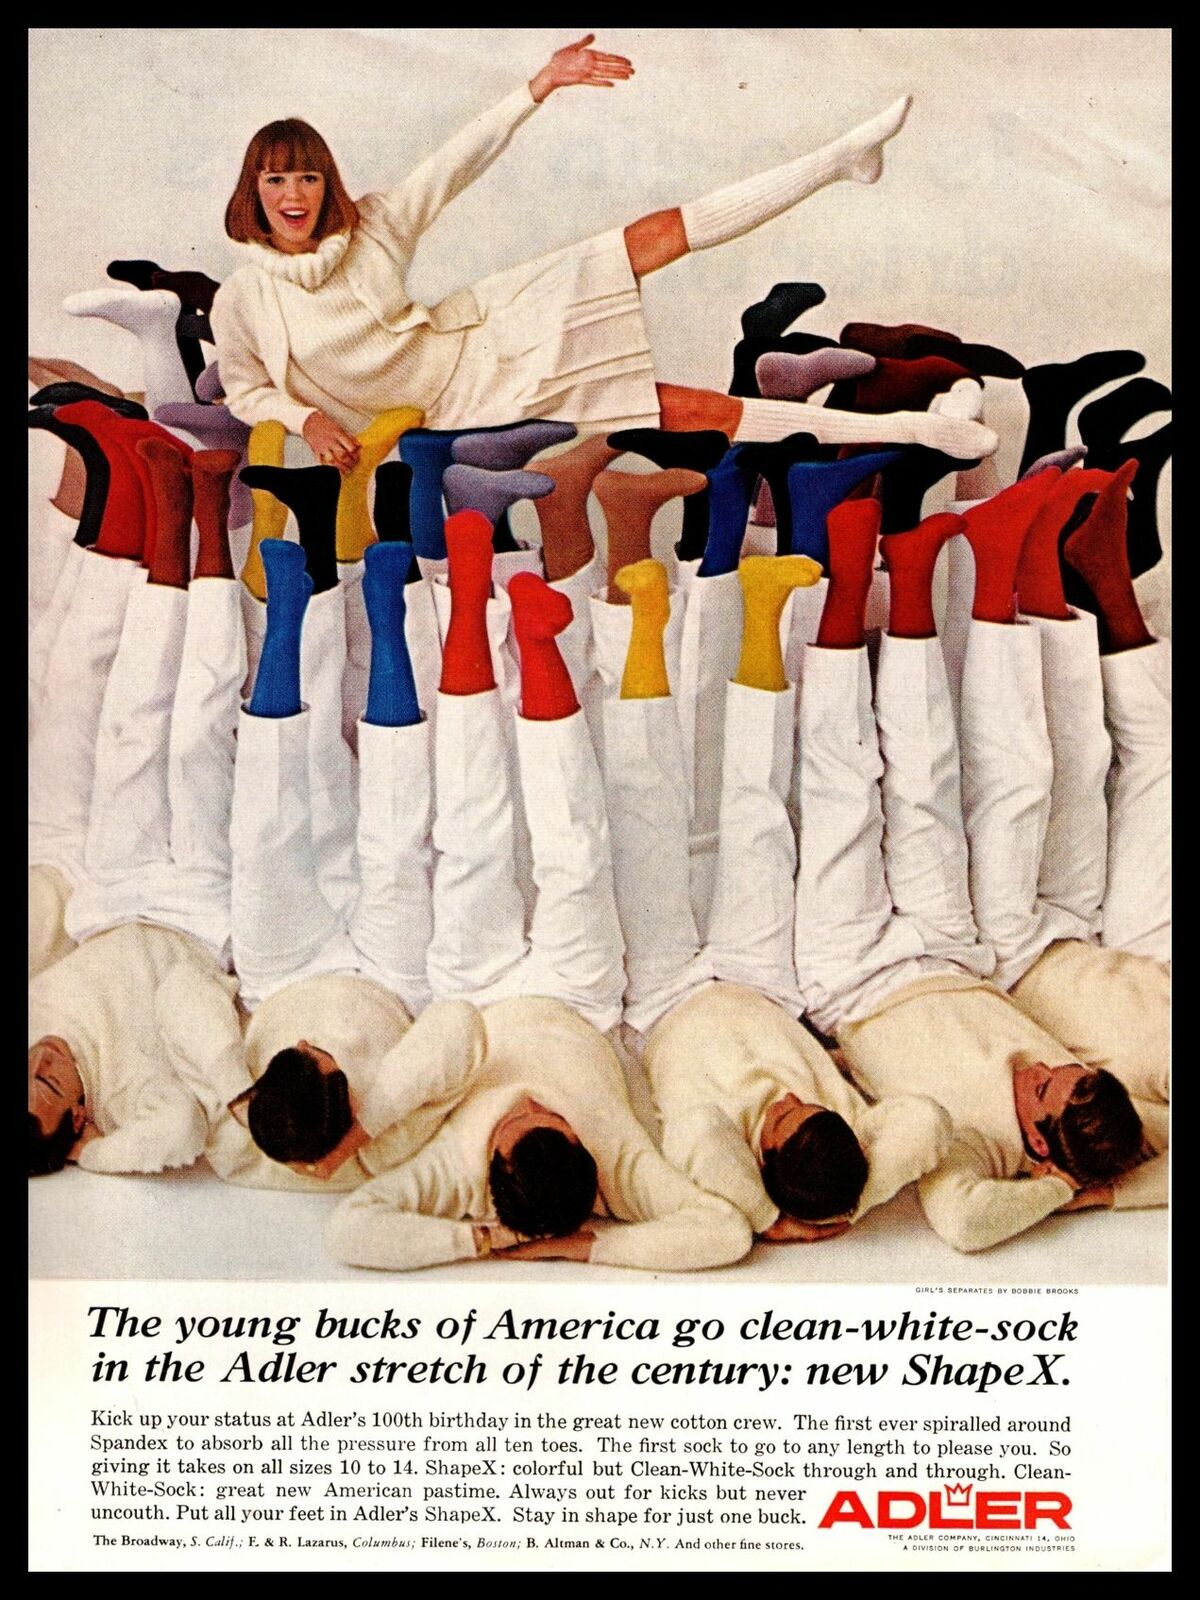 1965 Adler ShapeX Crew Socks Lady In Short Skirt Balanced On Men\'s Feet Print Ad